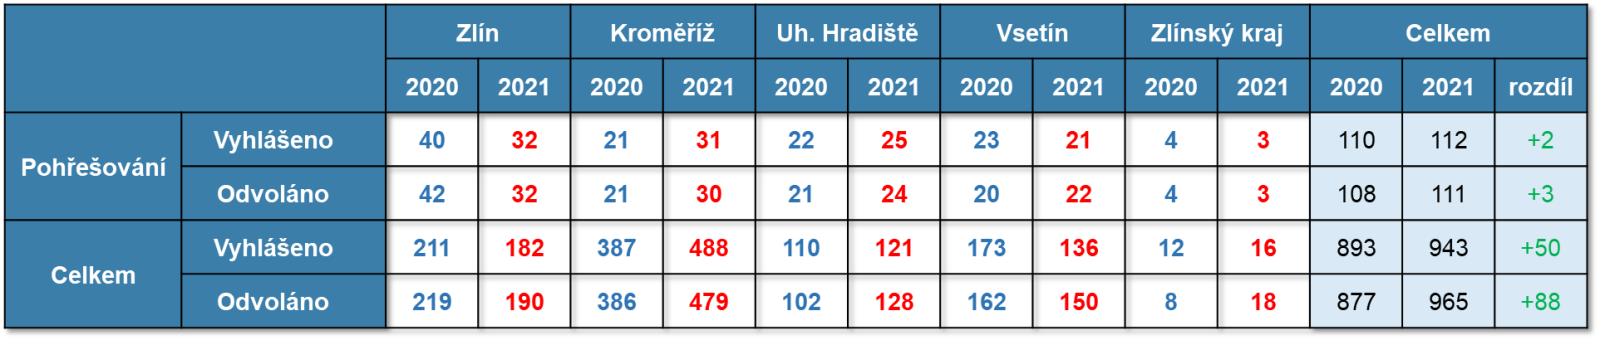 Pátrání po osobách na území Zlínského kraje za období 1. 1. – 31. 12. 2020 a 2021